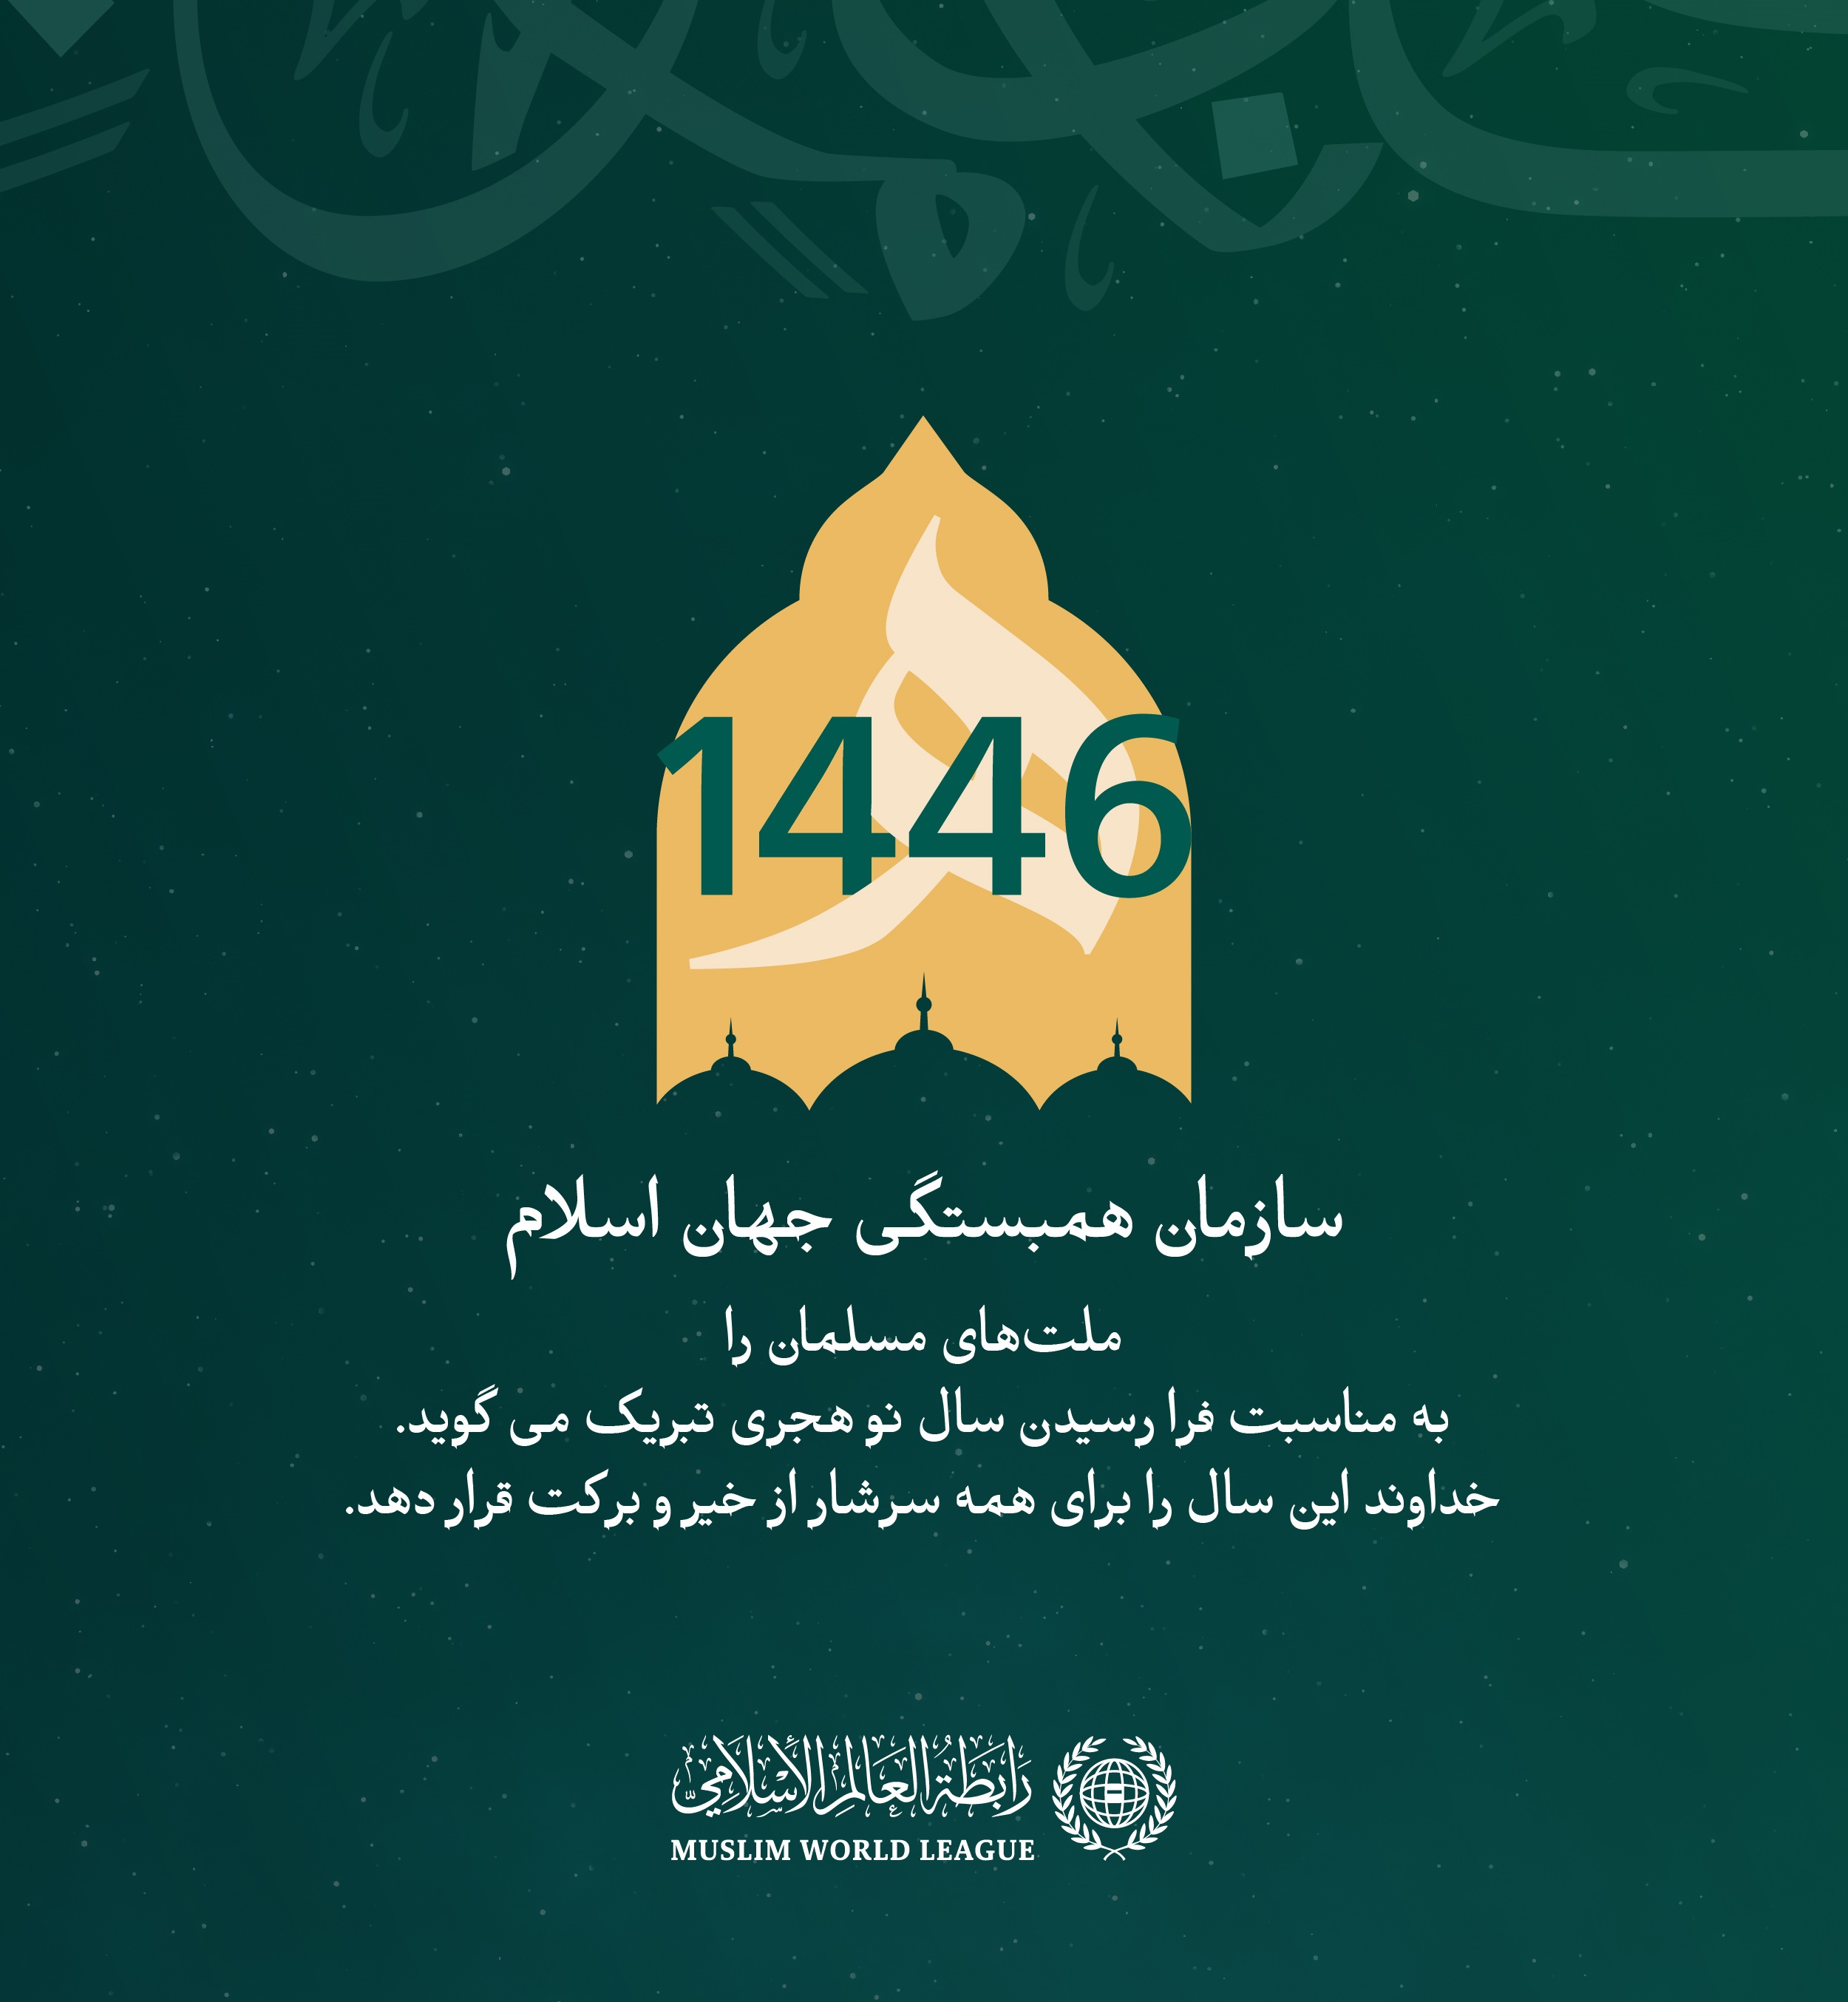 سازمان همبستگی جهان اسلام ، جهان اسلامی را به مناسبت فرا رسیدن سال نو هجری تبریک می‌گوید. خداوند این سال را سالی پر از خیر برای همگان قرار دهد.